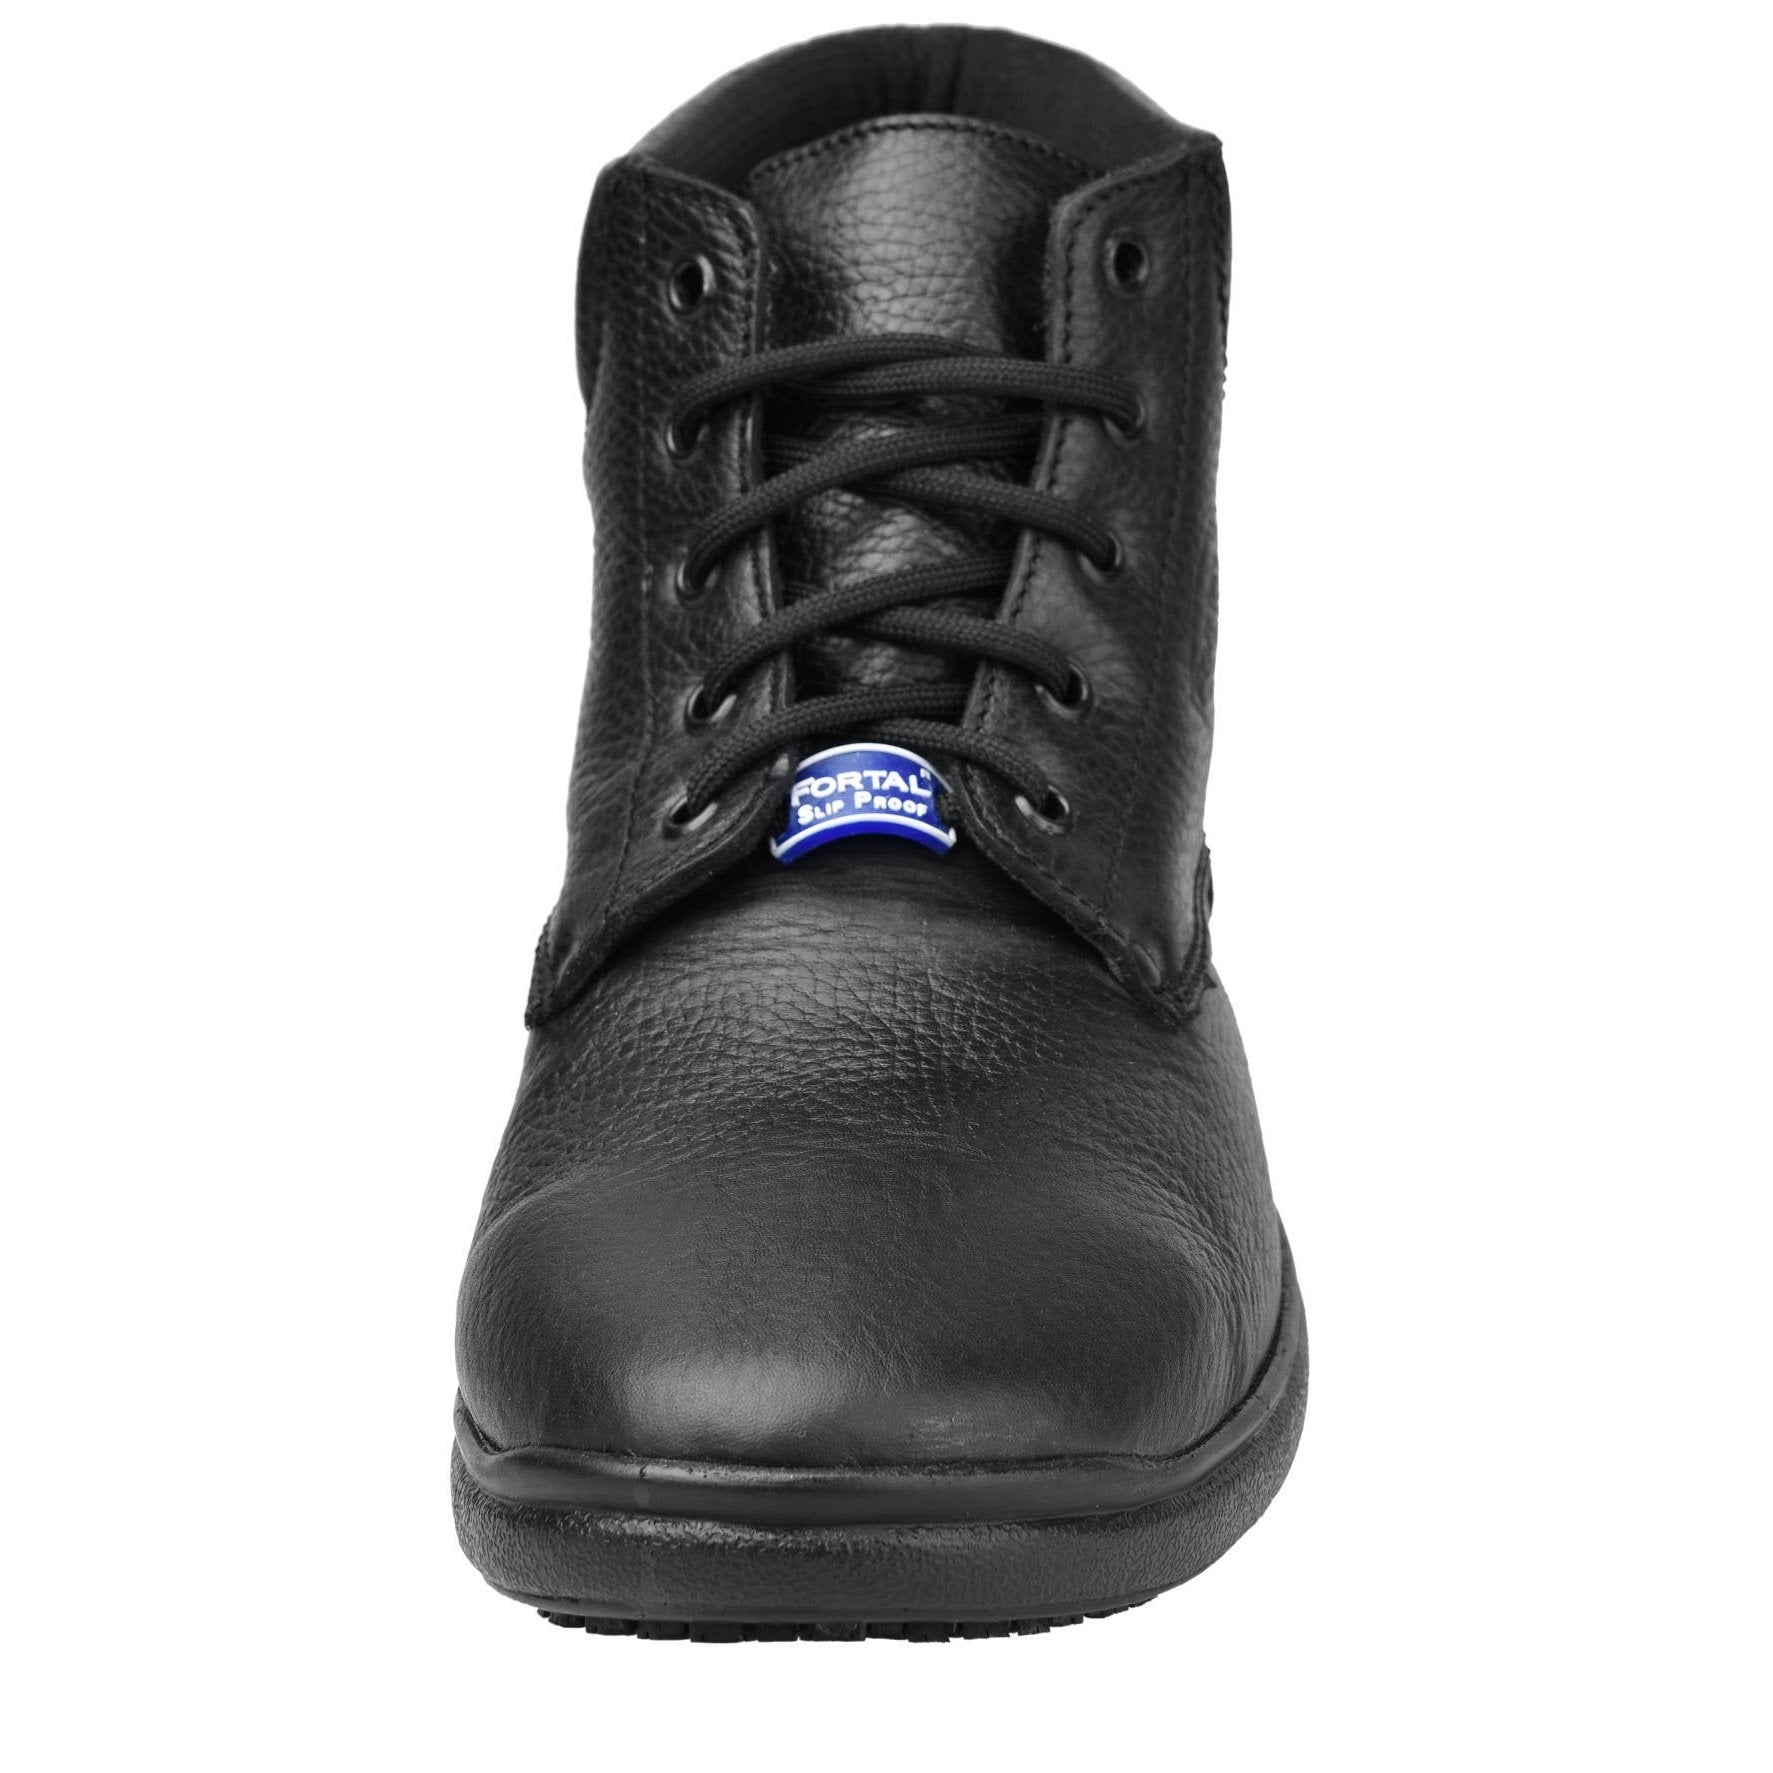 Men's Work Boots - Non Slip - Black Work Boots - Fortal - 6" Work Boots - Black 6in Work Boots